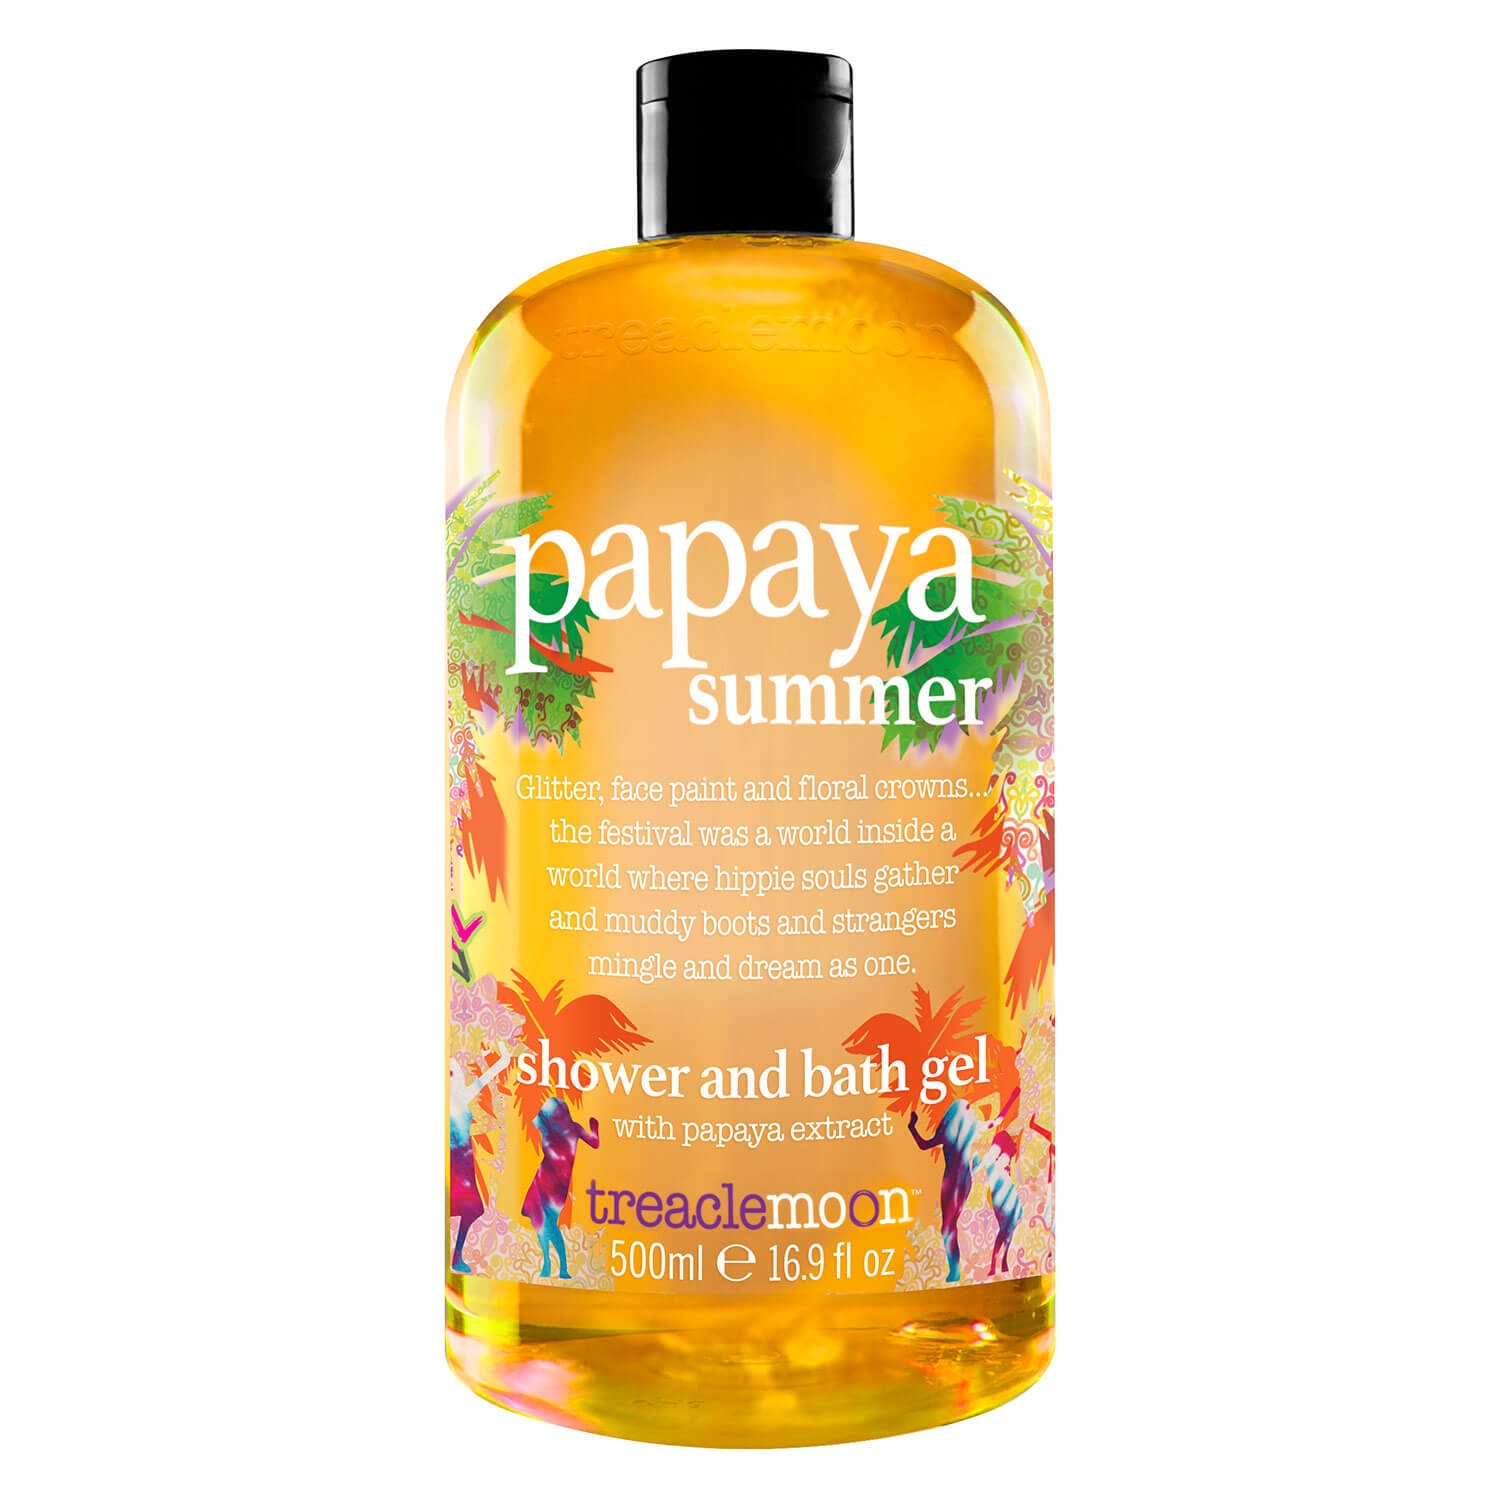 Produktbild von treaclemoon - papaya summer shower and bath gel